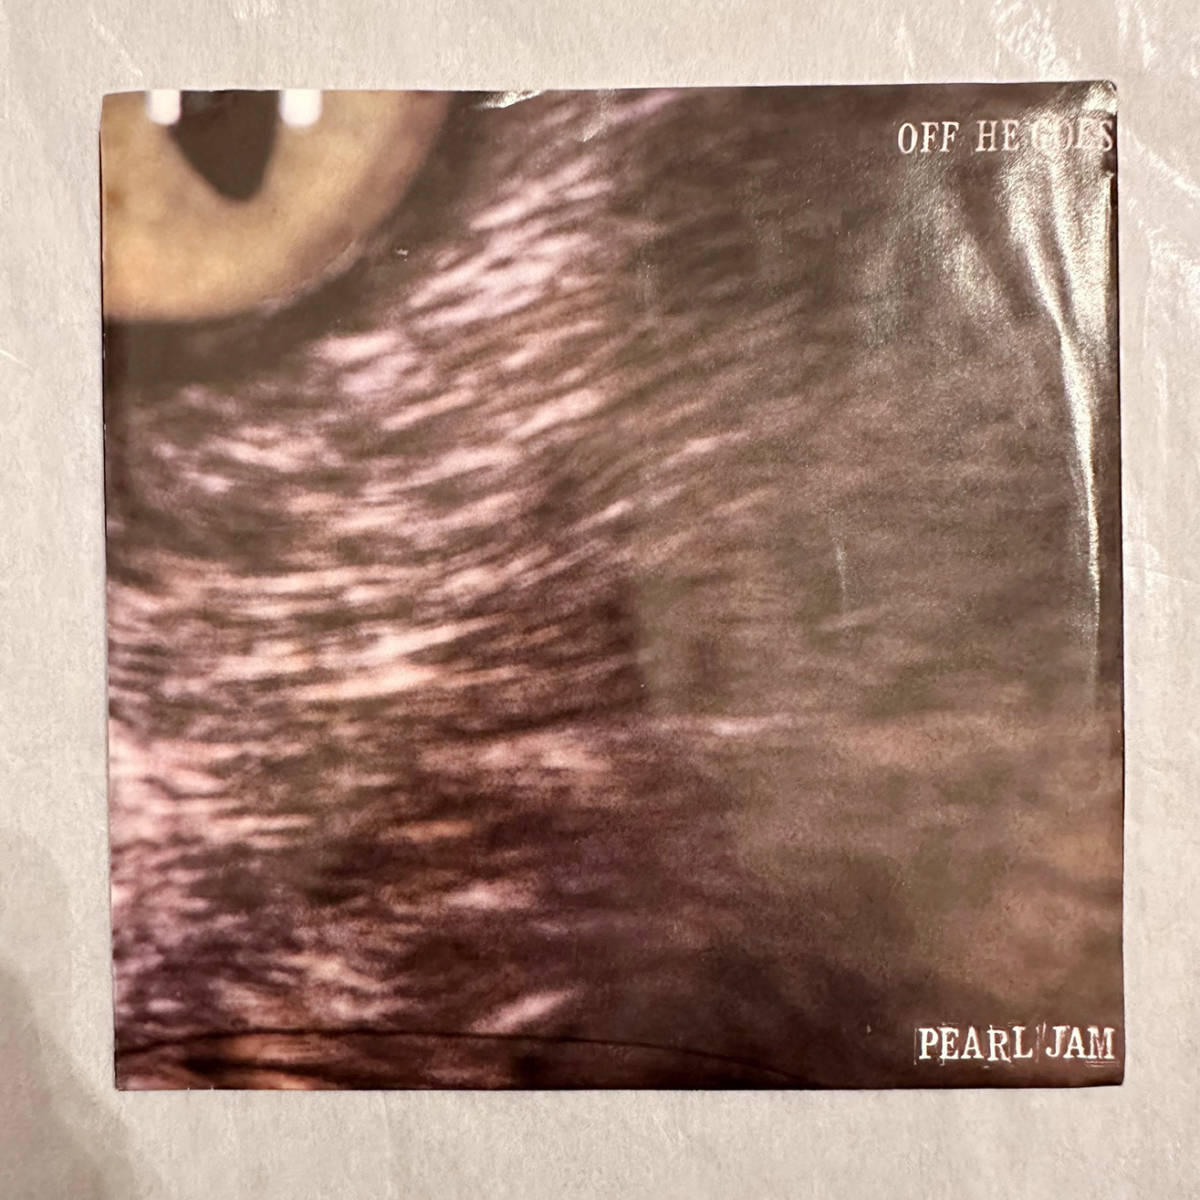 ■1996年 US盤 オリジナル 新品 Pearl Jam - Off He Goes 7”EP 34 78491 Epic パール・ジャム_画像1